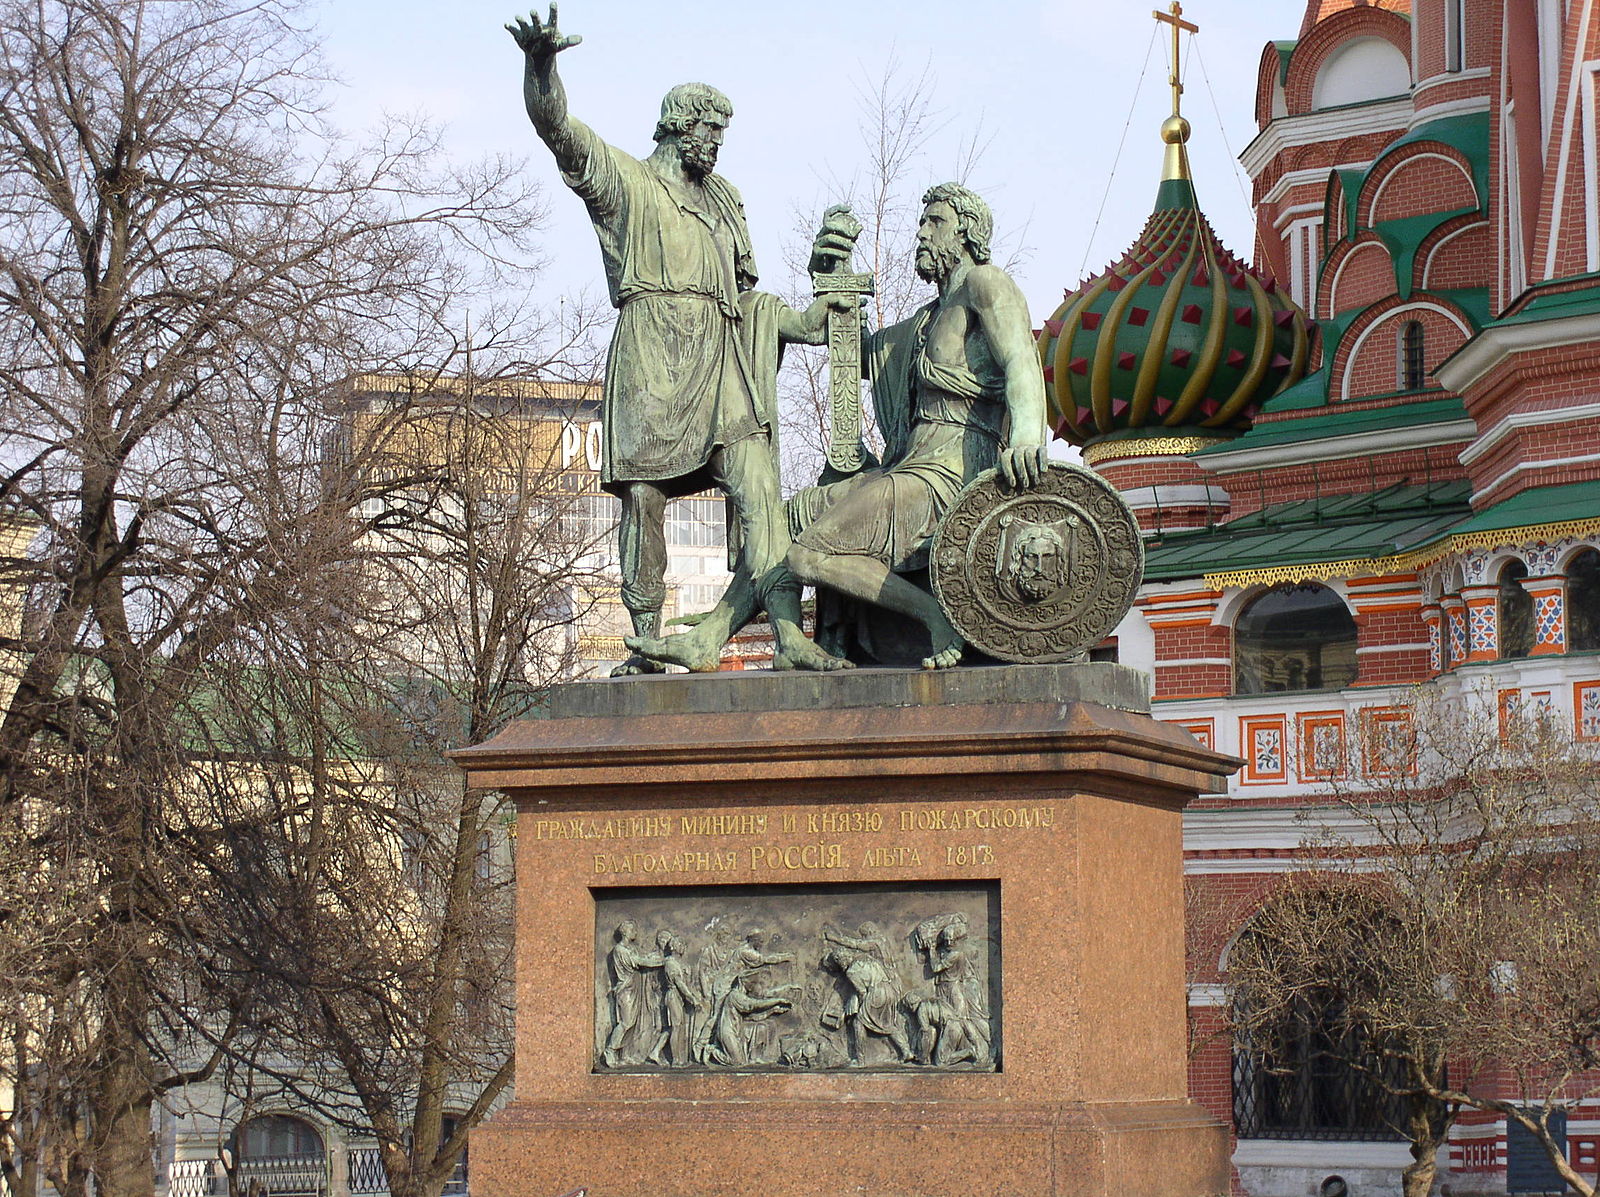 Памятник кузьме минину и дмитрию пожарскому фото